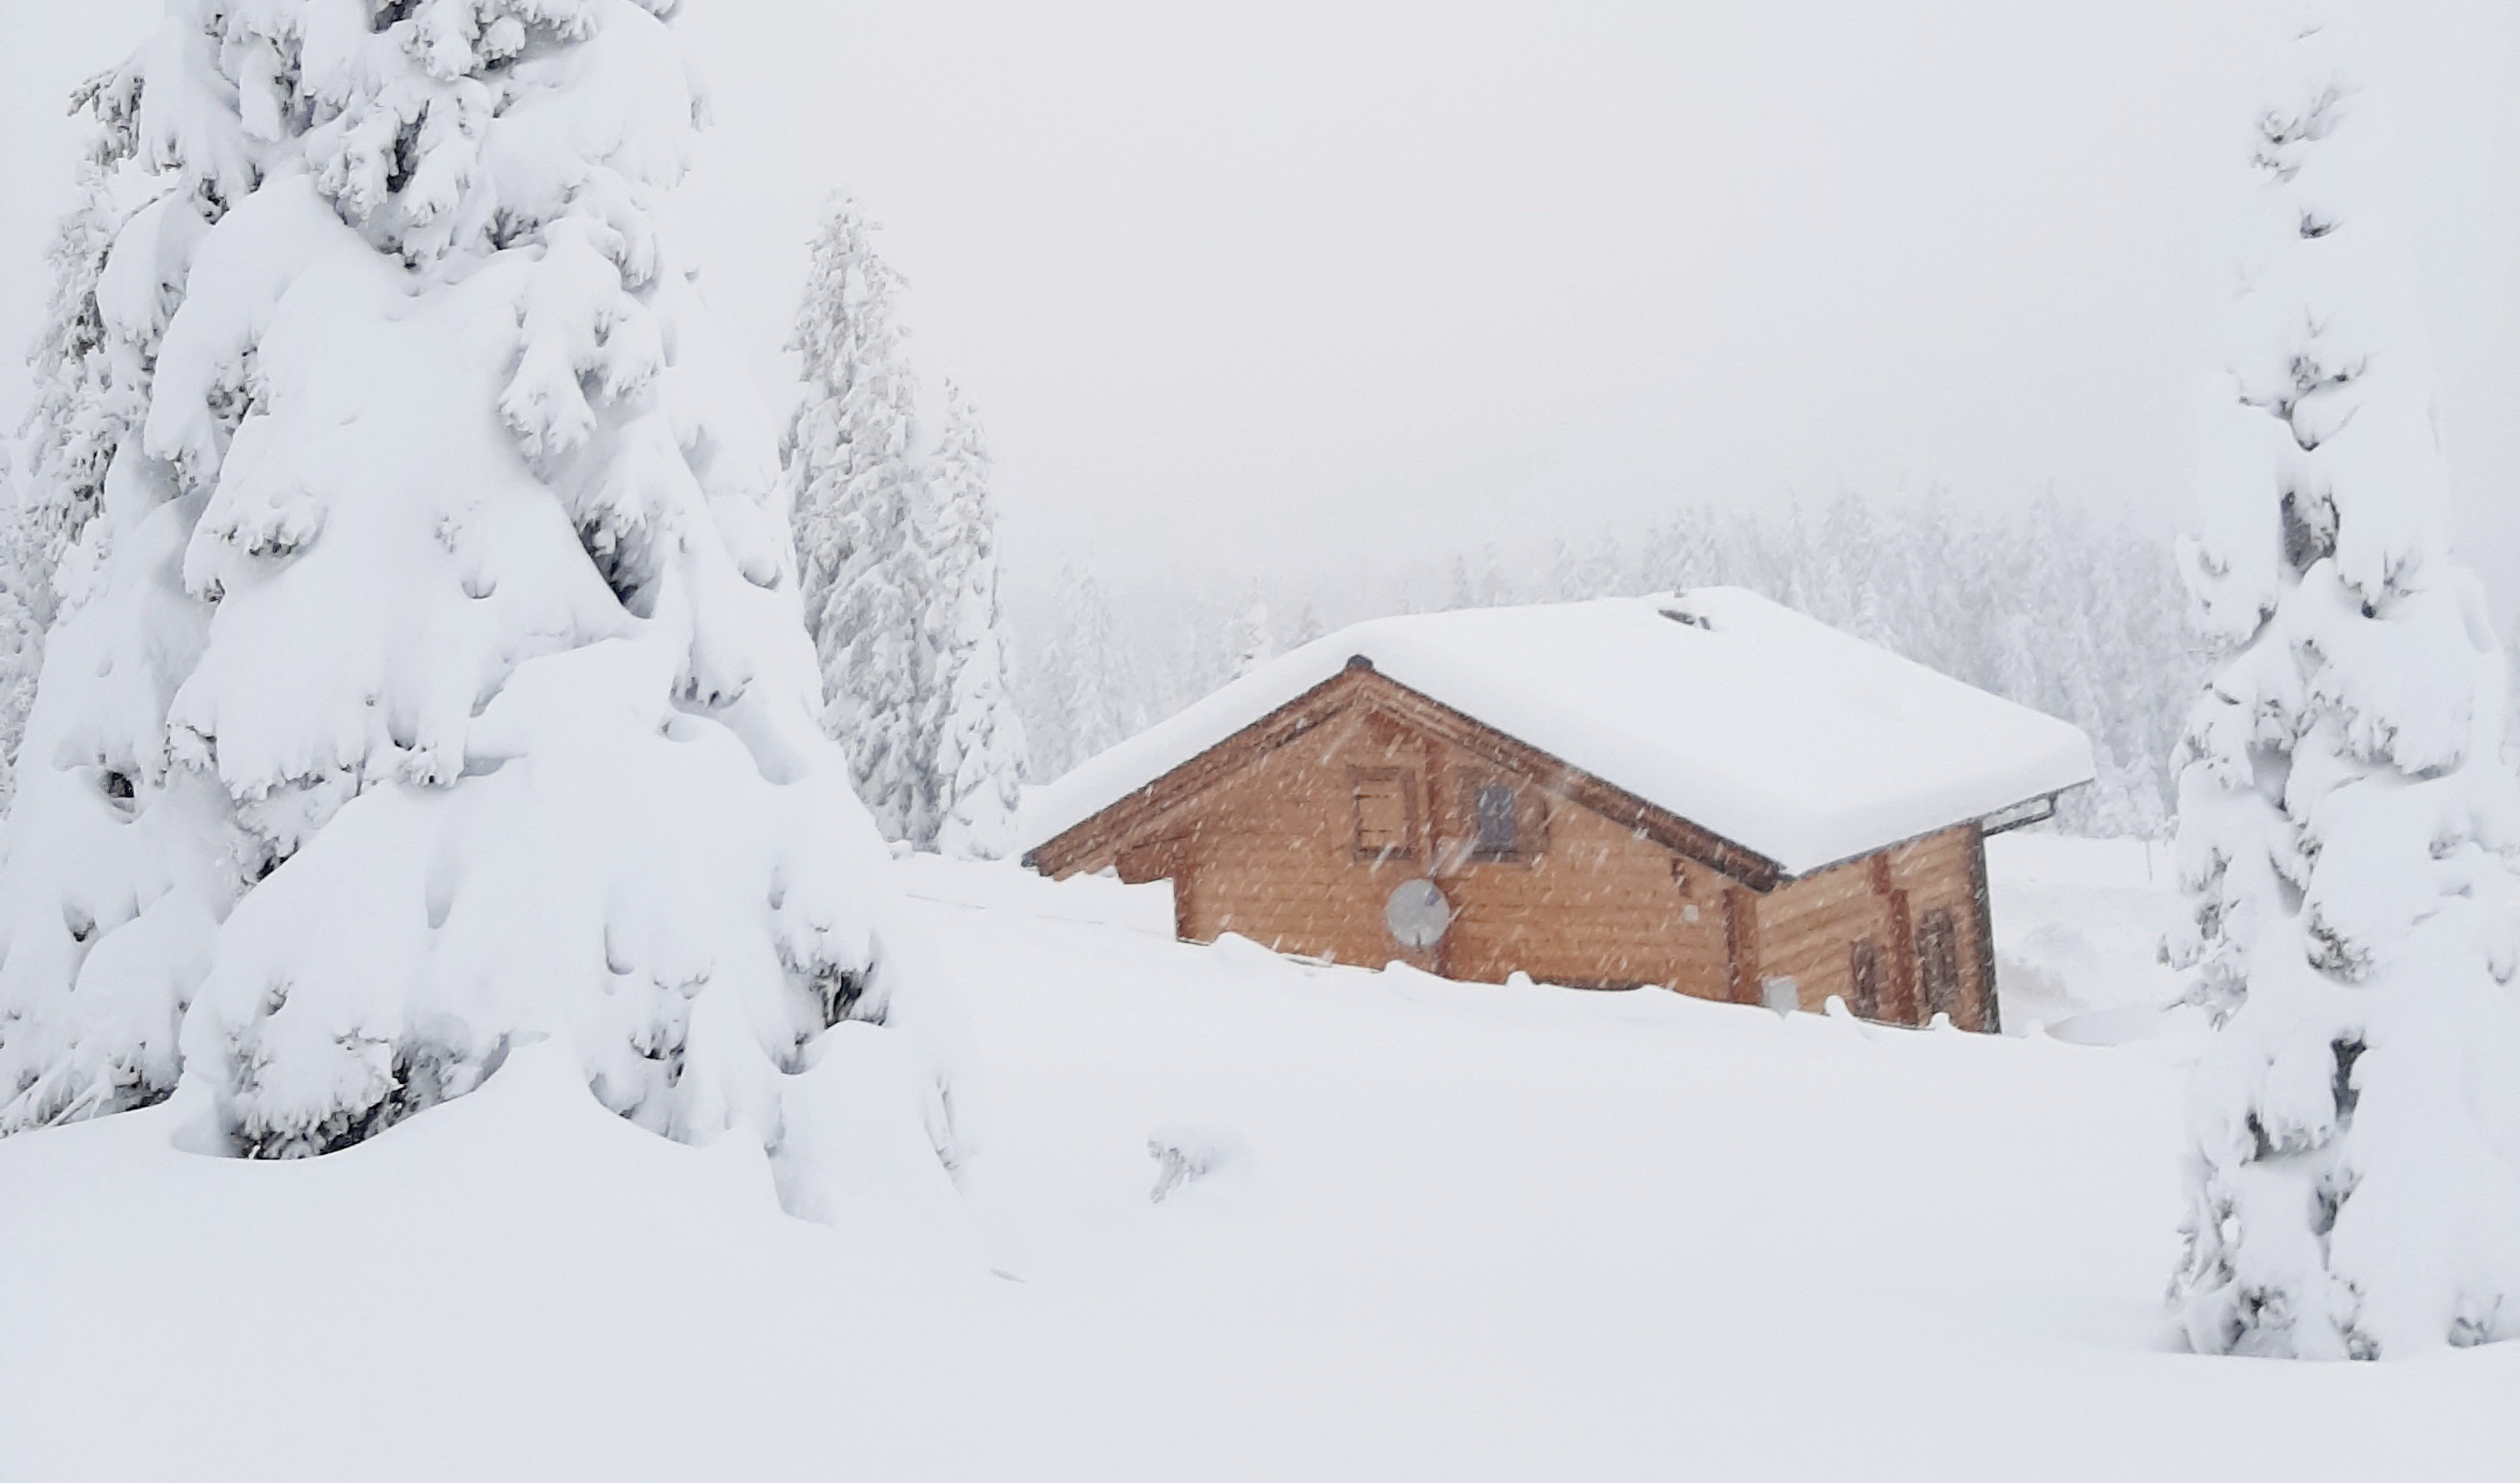 110 cm friss hó a Ziller völgyében - Fotó: Stánicz Balázs (Stani)